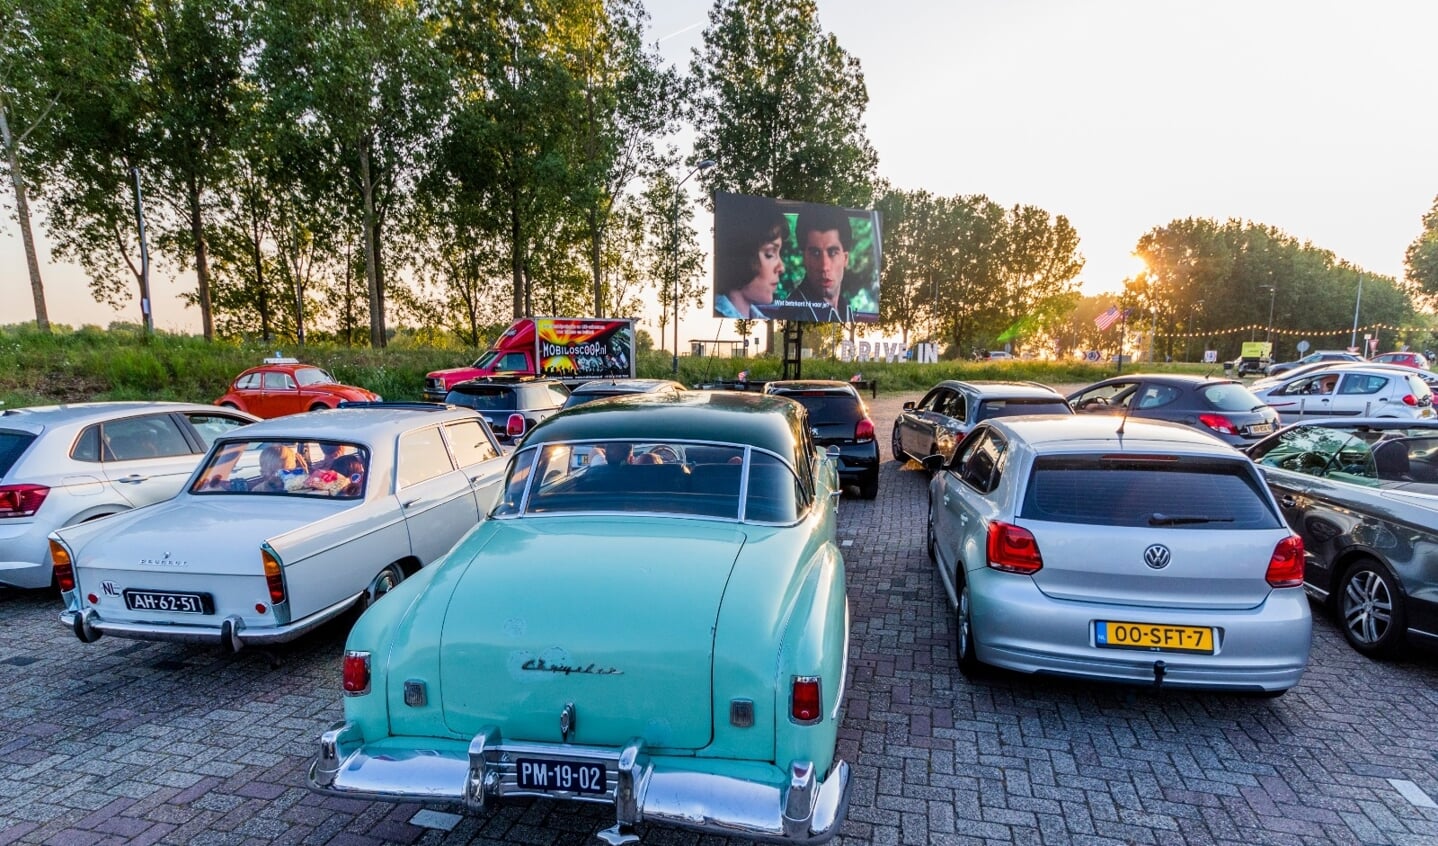 Drive In Bioscoop Den Bosch presenteert op zaterdag 13 augustus 'The Summer Night Edition'. Er worden dan drie bioscoopfilms getoond.